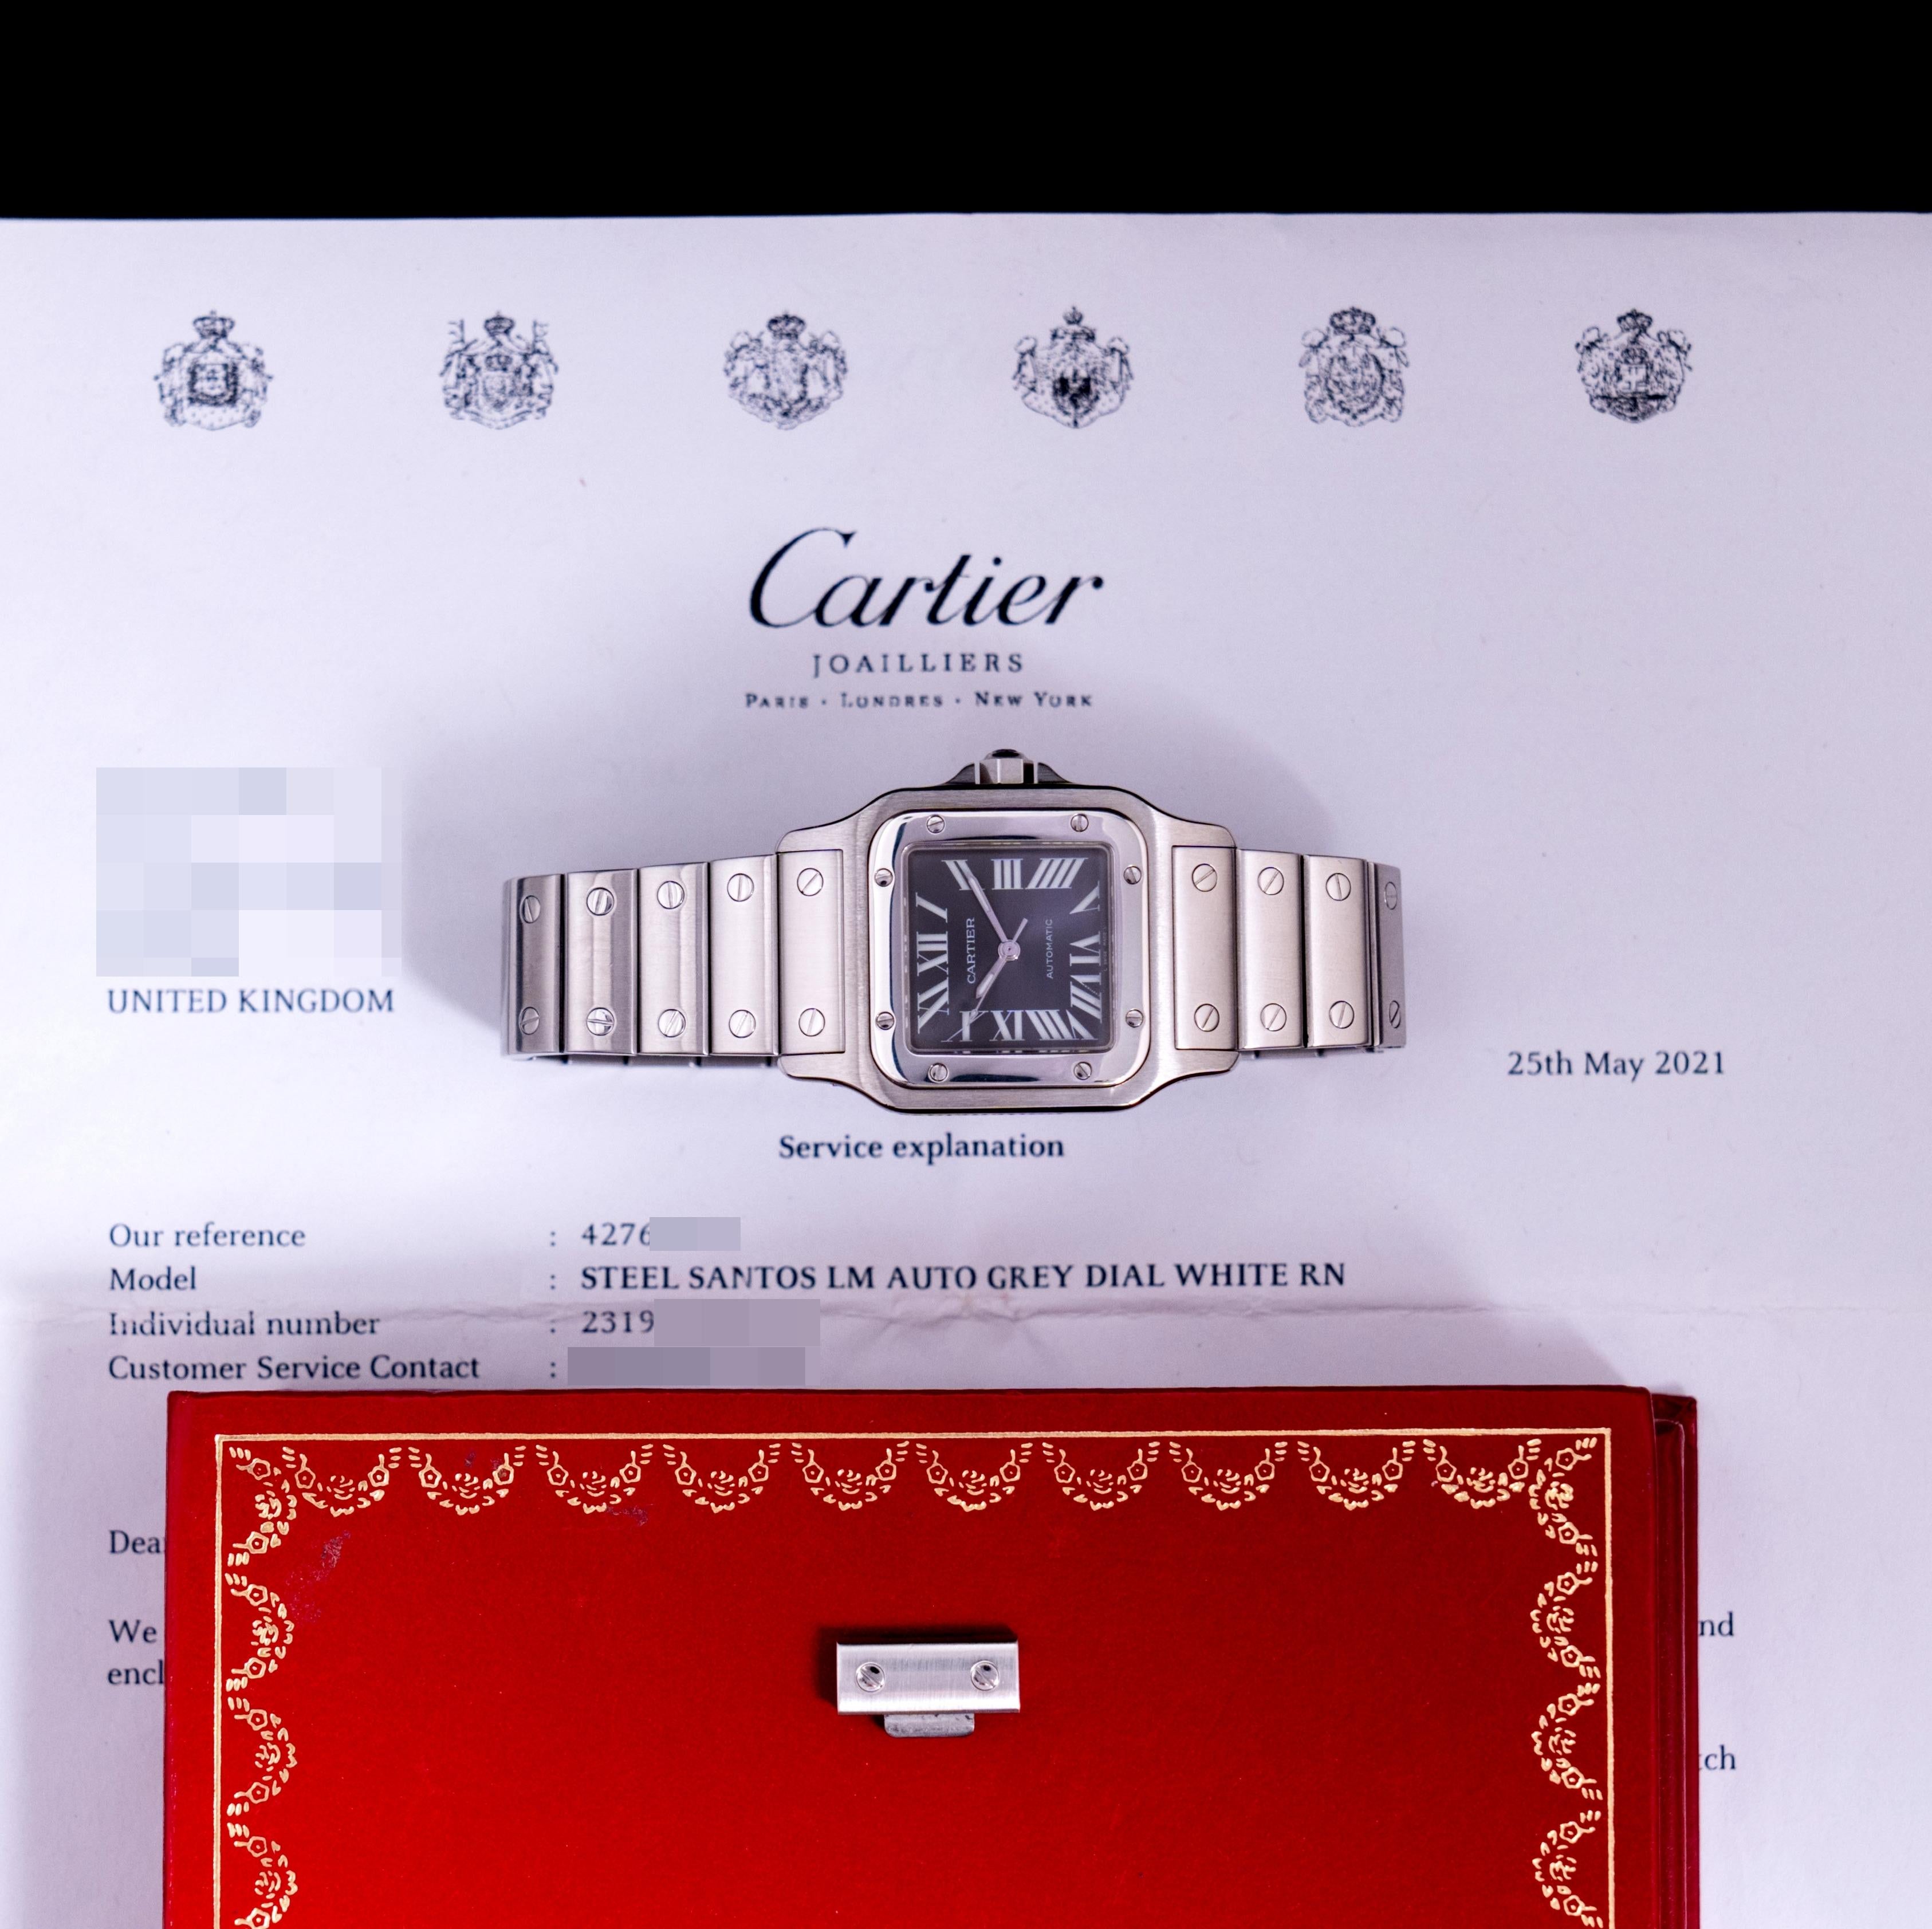 Marke: Cartier
Modell: Santos Galbée 2319
Jahr: 2002
Seriennummer: 949xxxxx
Referenz: C03912

Wir stellen die Cartier Santos Galbée 2319 Limited Edition vor. Sie wurde auf der SIHH-Messe 2002 in Singapur vorgestellt und war auf nur 2000 Stück